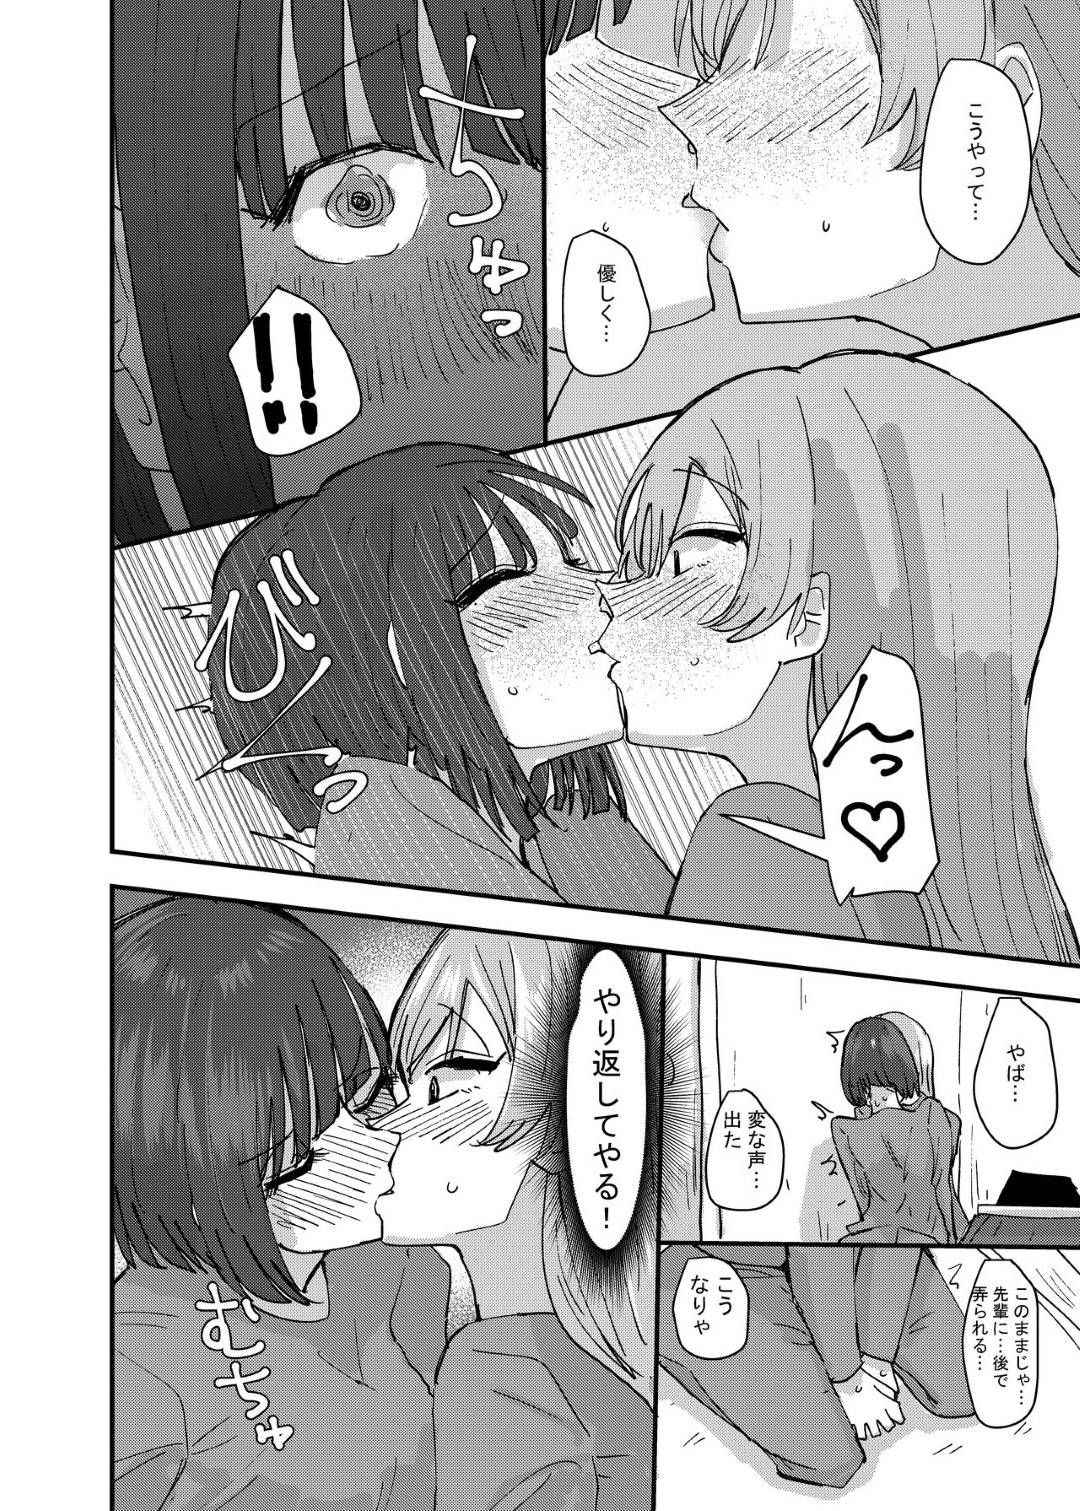 【エロ漫画】キスしたことない先輩にマウントを取られ、流れでキスすることになった田中。ベロチューしてしまいムラムラした2人は布団の中で具合わせでイってしまう【アウェイ田】